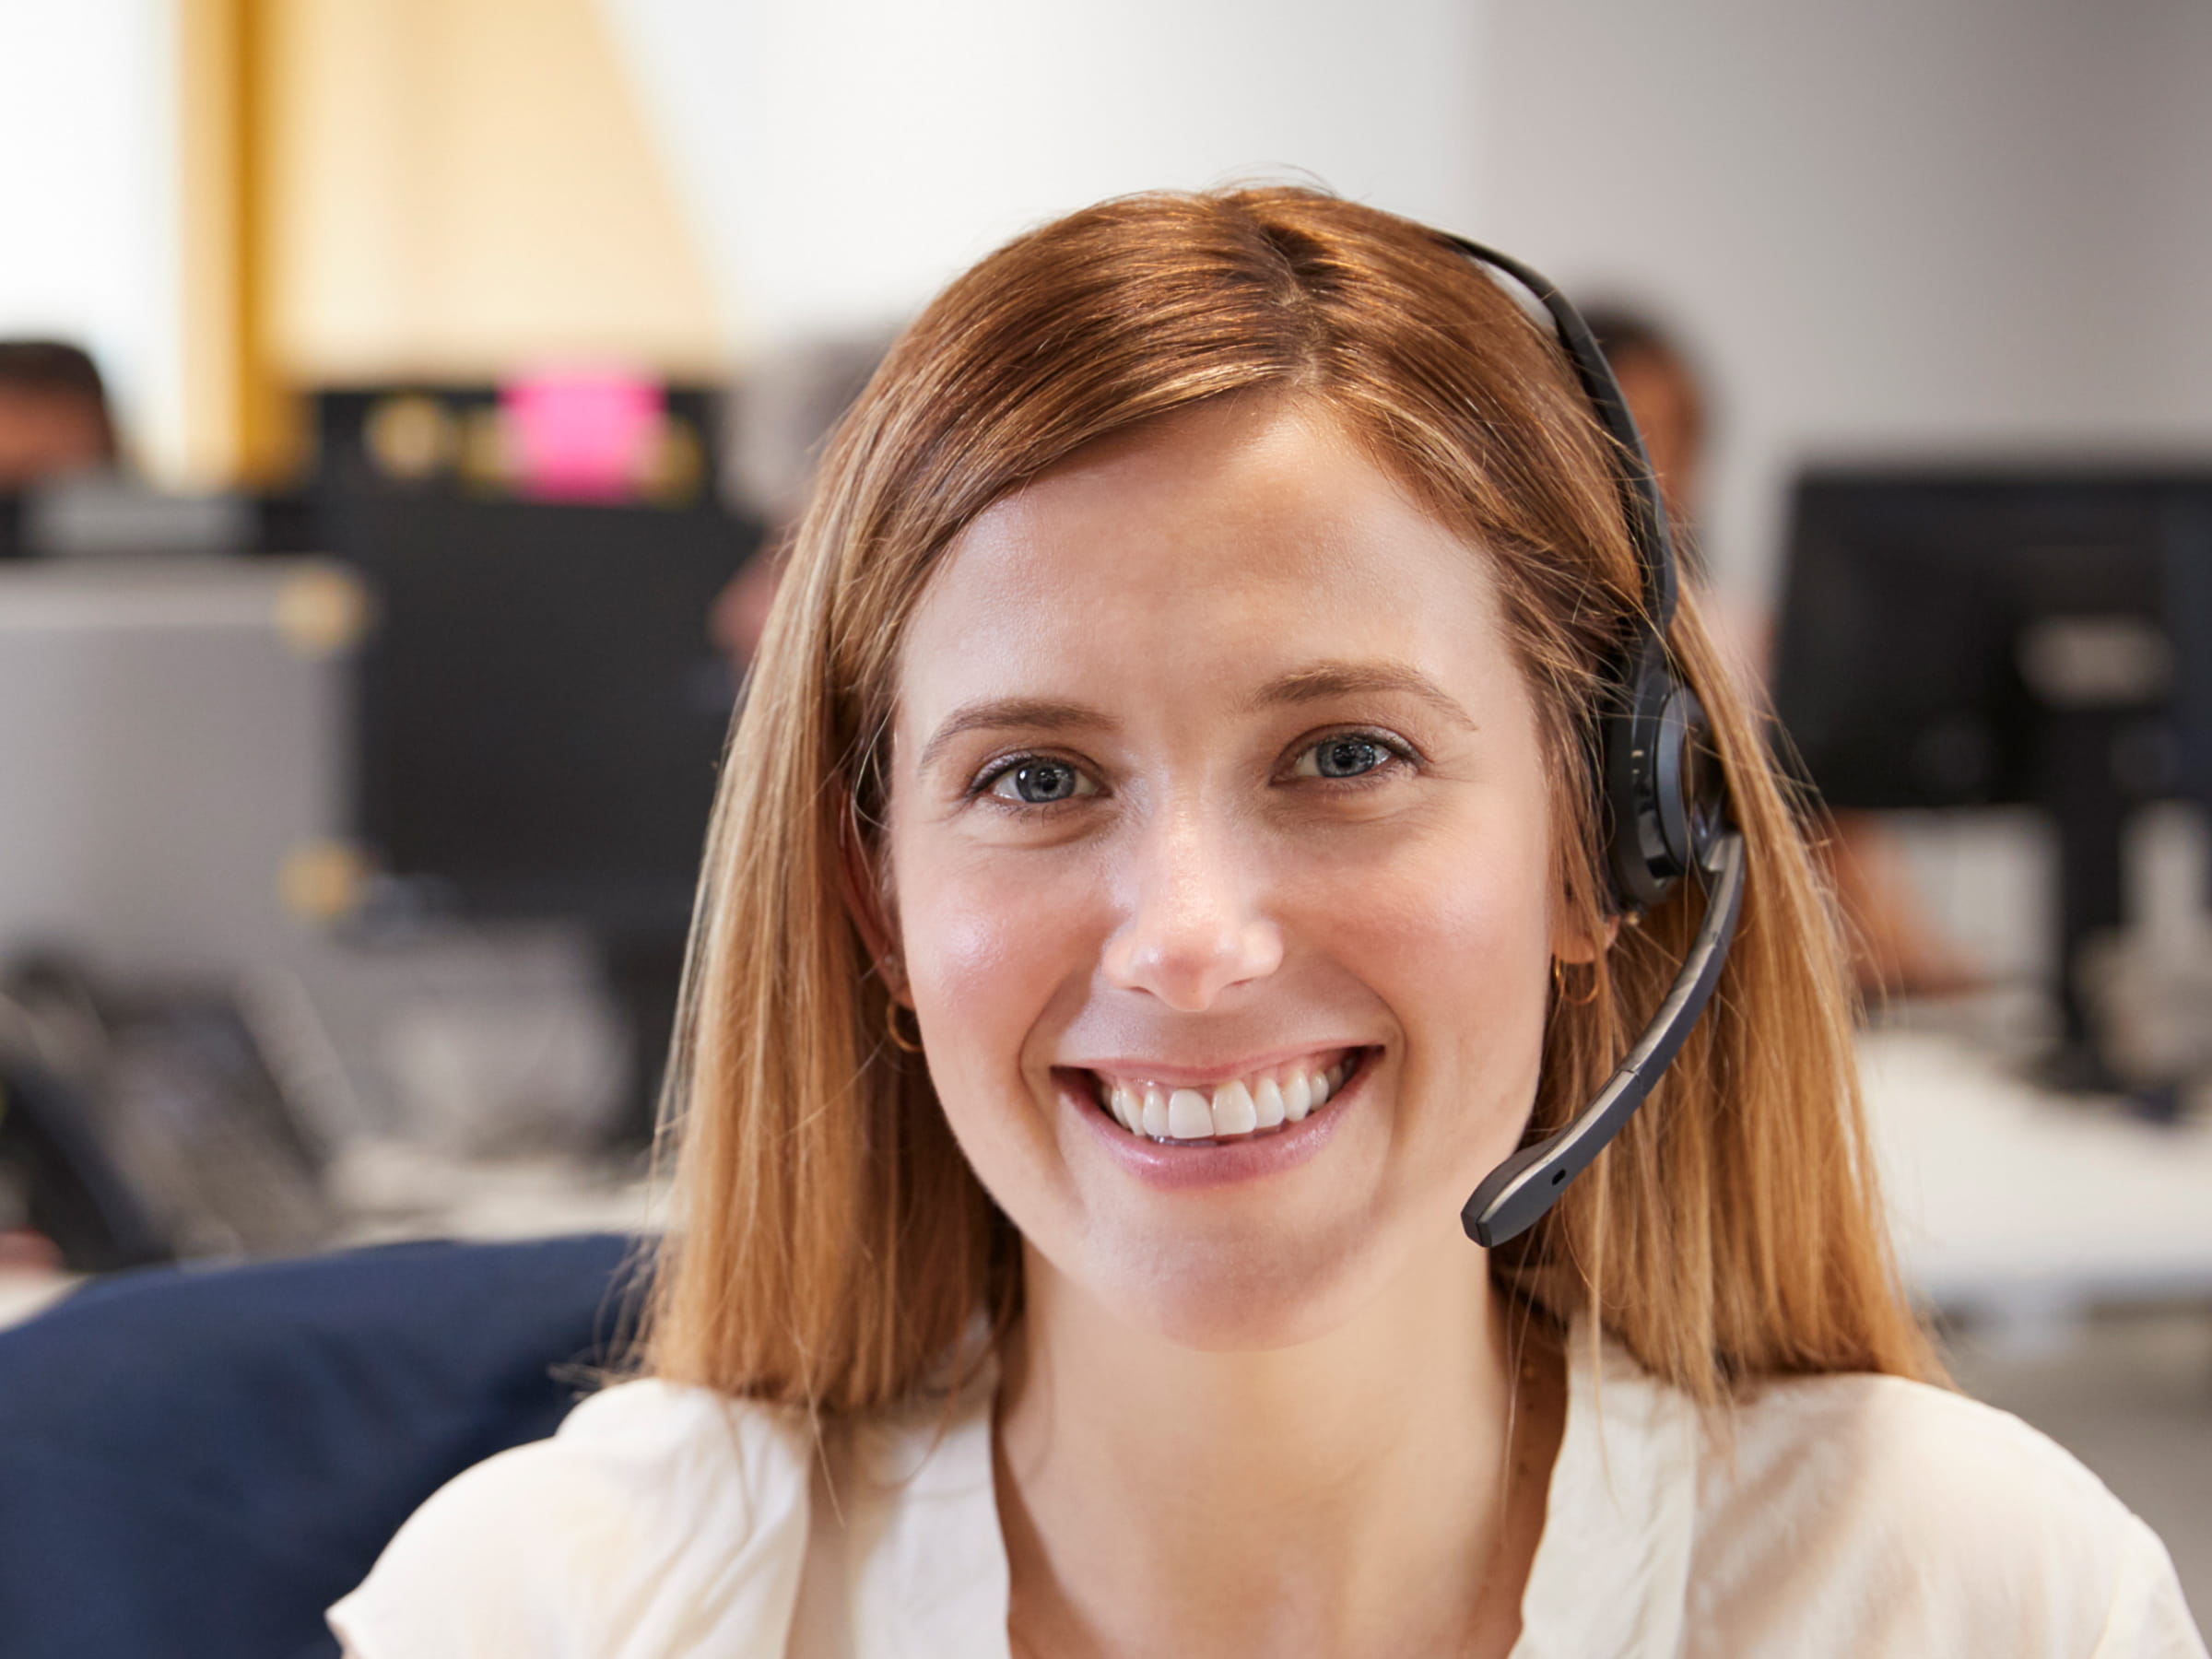 Smiling call centre agent